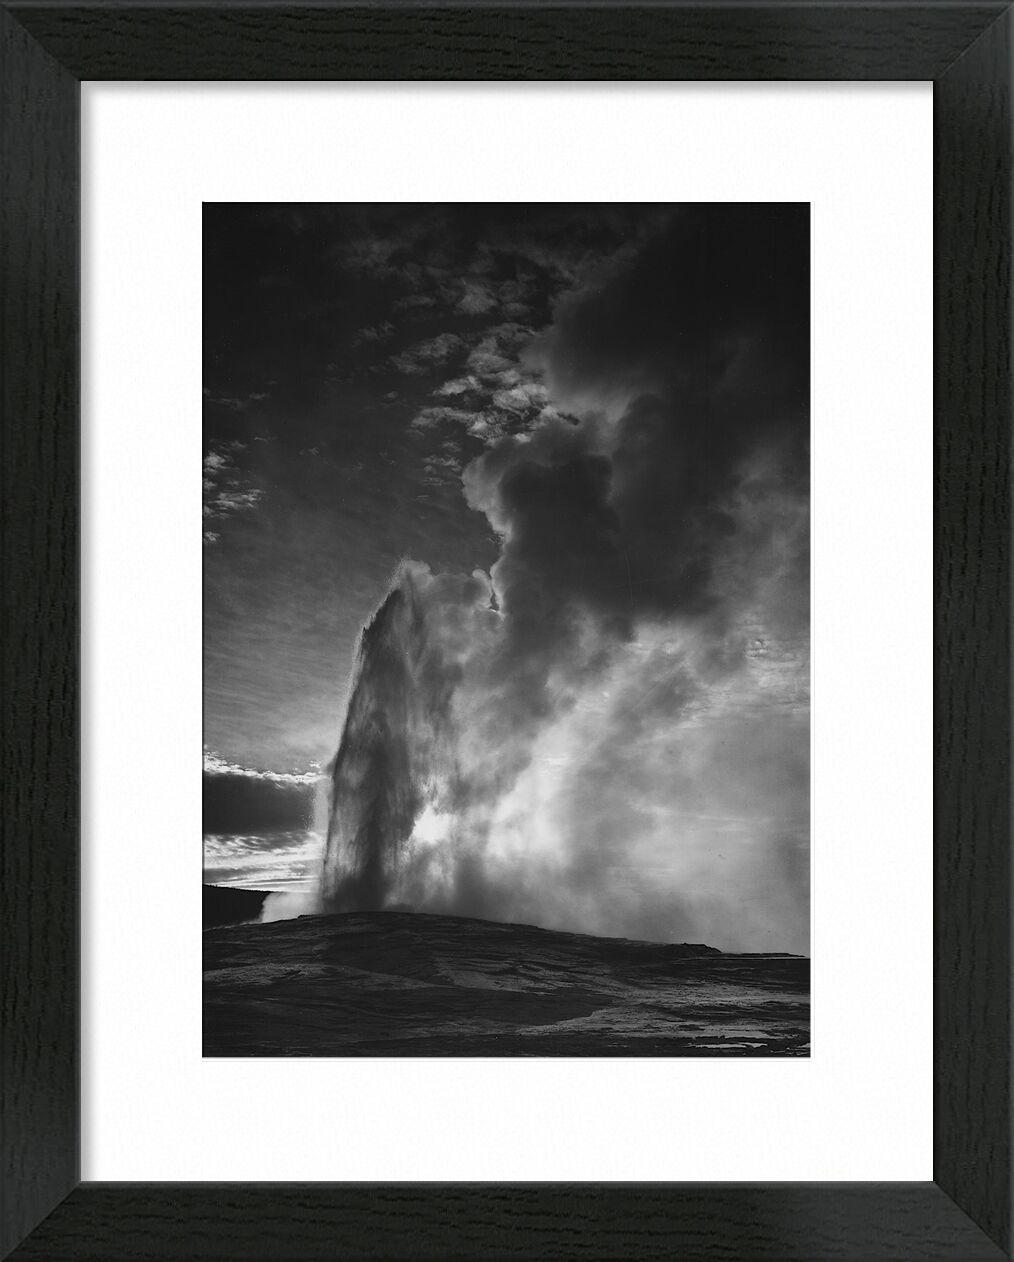 Old Faithful Geyser Yellowstone National Park - Ansel Adams von Bildende Kunst, Prodi Art, ANSEL ADAMS, Geysir, Schwarz und weiß, Yellowstone